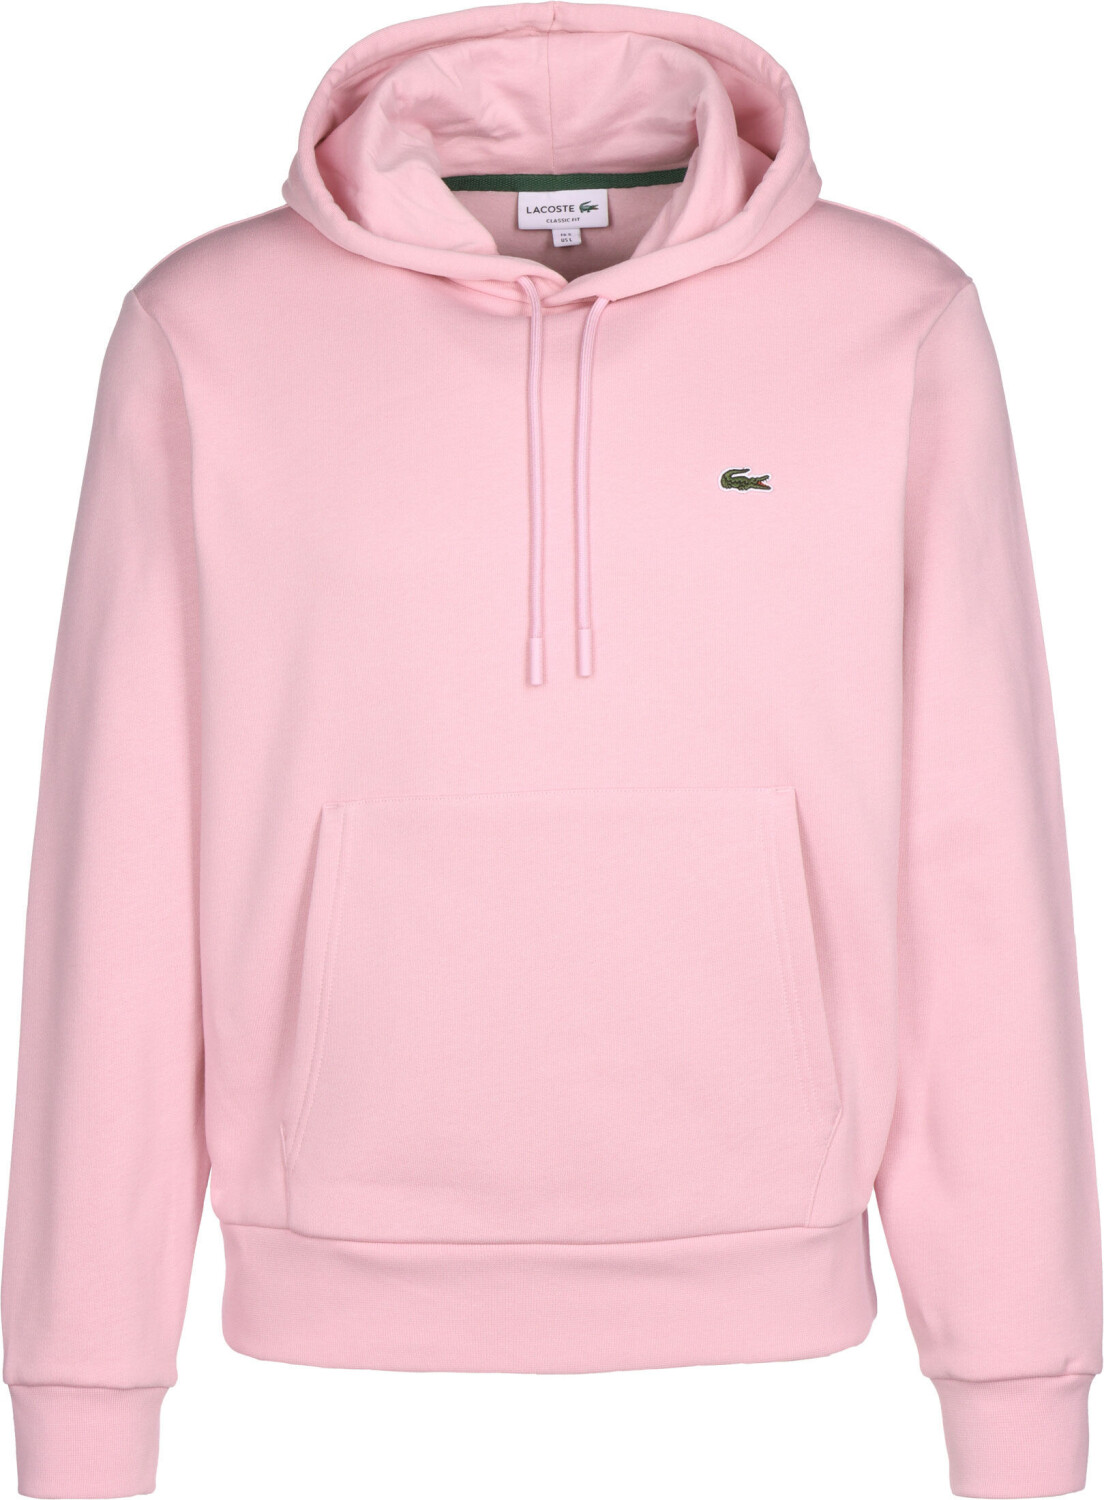 Buy Lacoste Sweatshirt (SH9623) pink from £76.99 (Today) – Best Deals ...